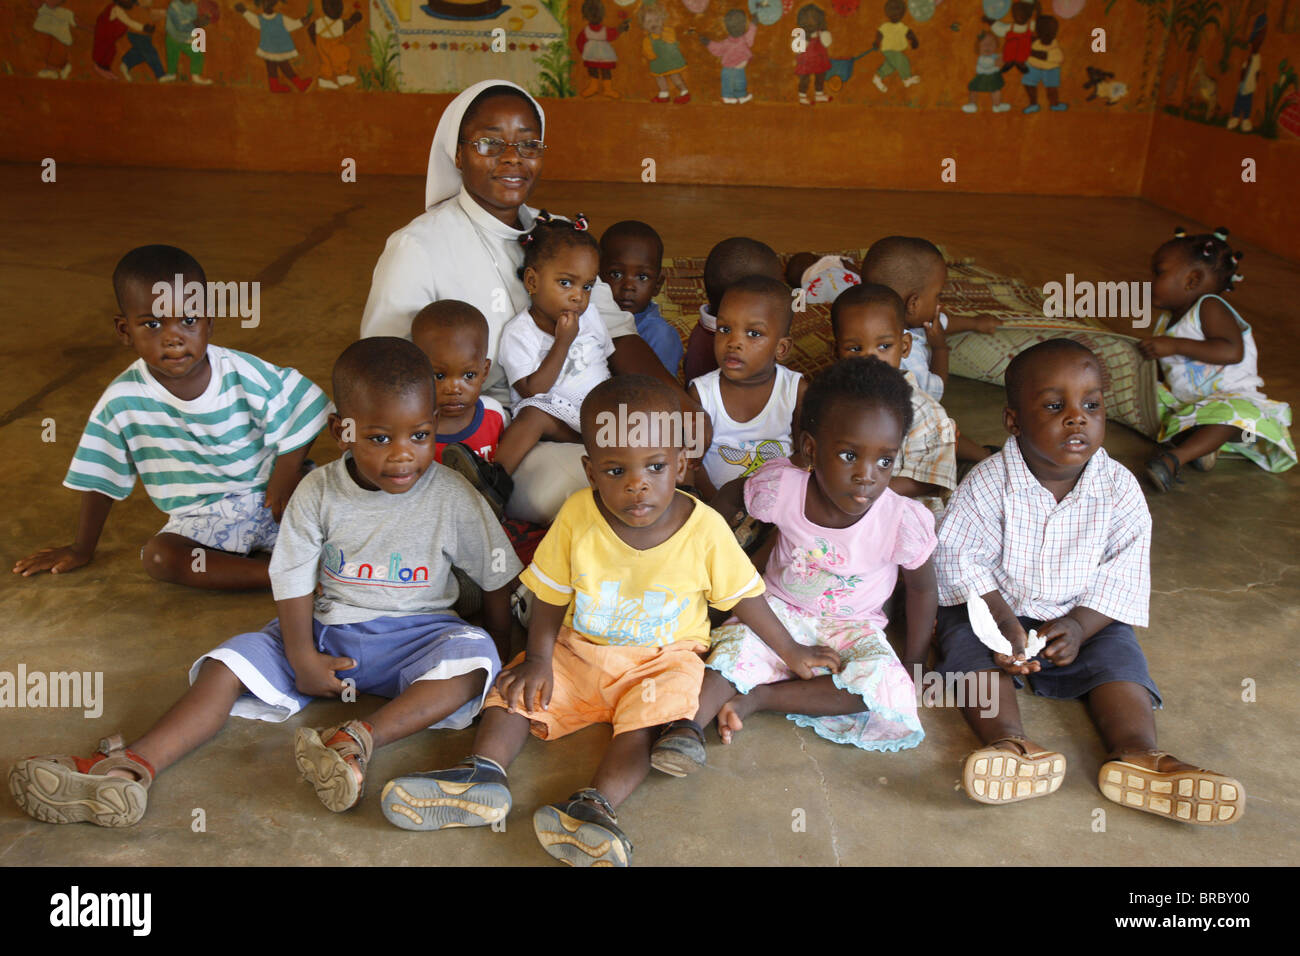 La maternelle dirigée par des religieuses catholiques, Lomé, Togo, Afrique de l'Ouest Banque D'Images